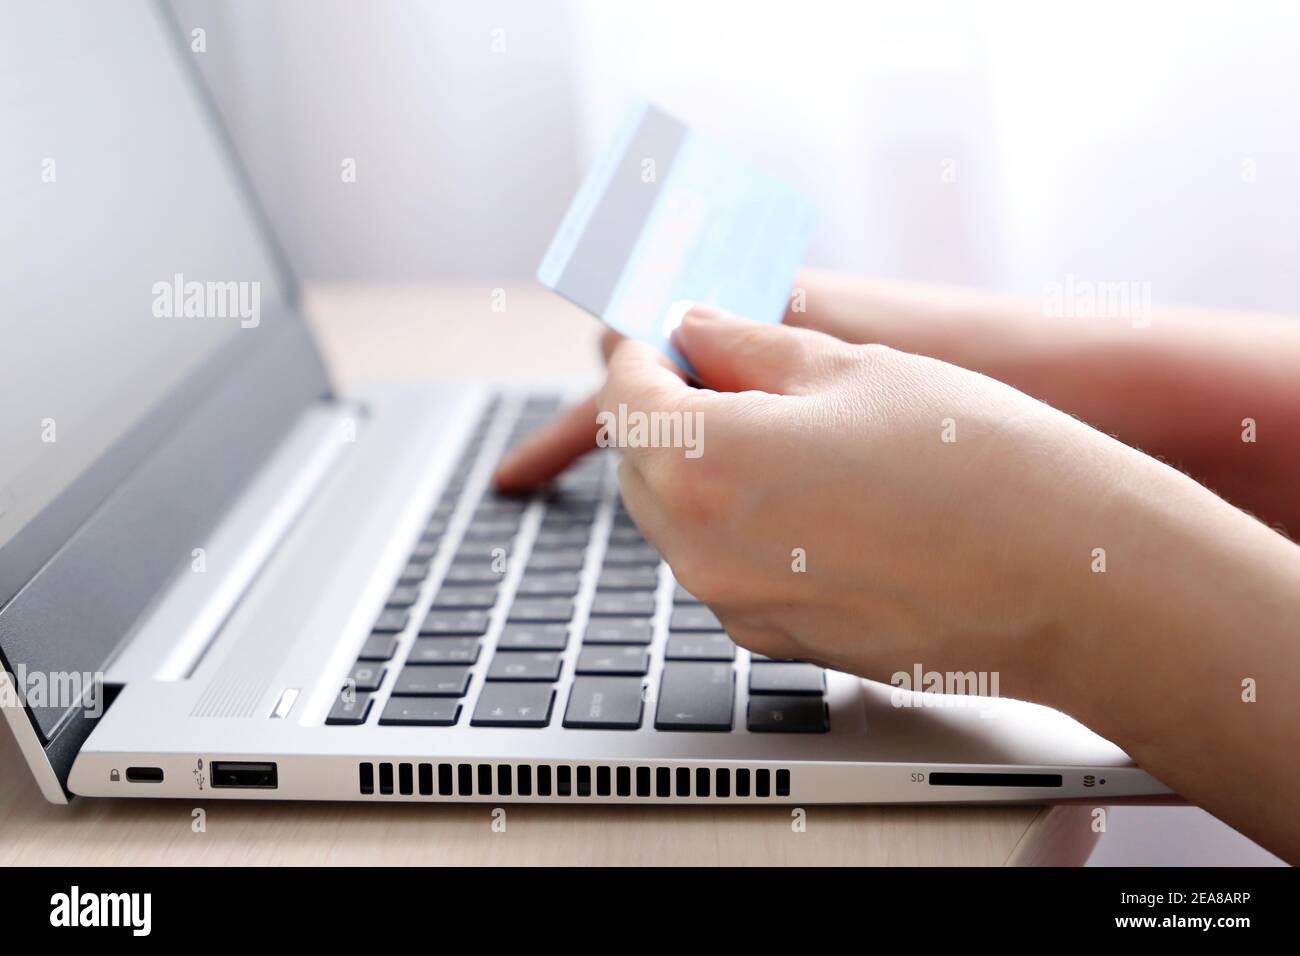 Frau mit Kreditkarten-Typen auf Laptop-Tastatur. Konzept von Online-Shopping und Zahlung, Finanztransaktionen Stockfoto